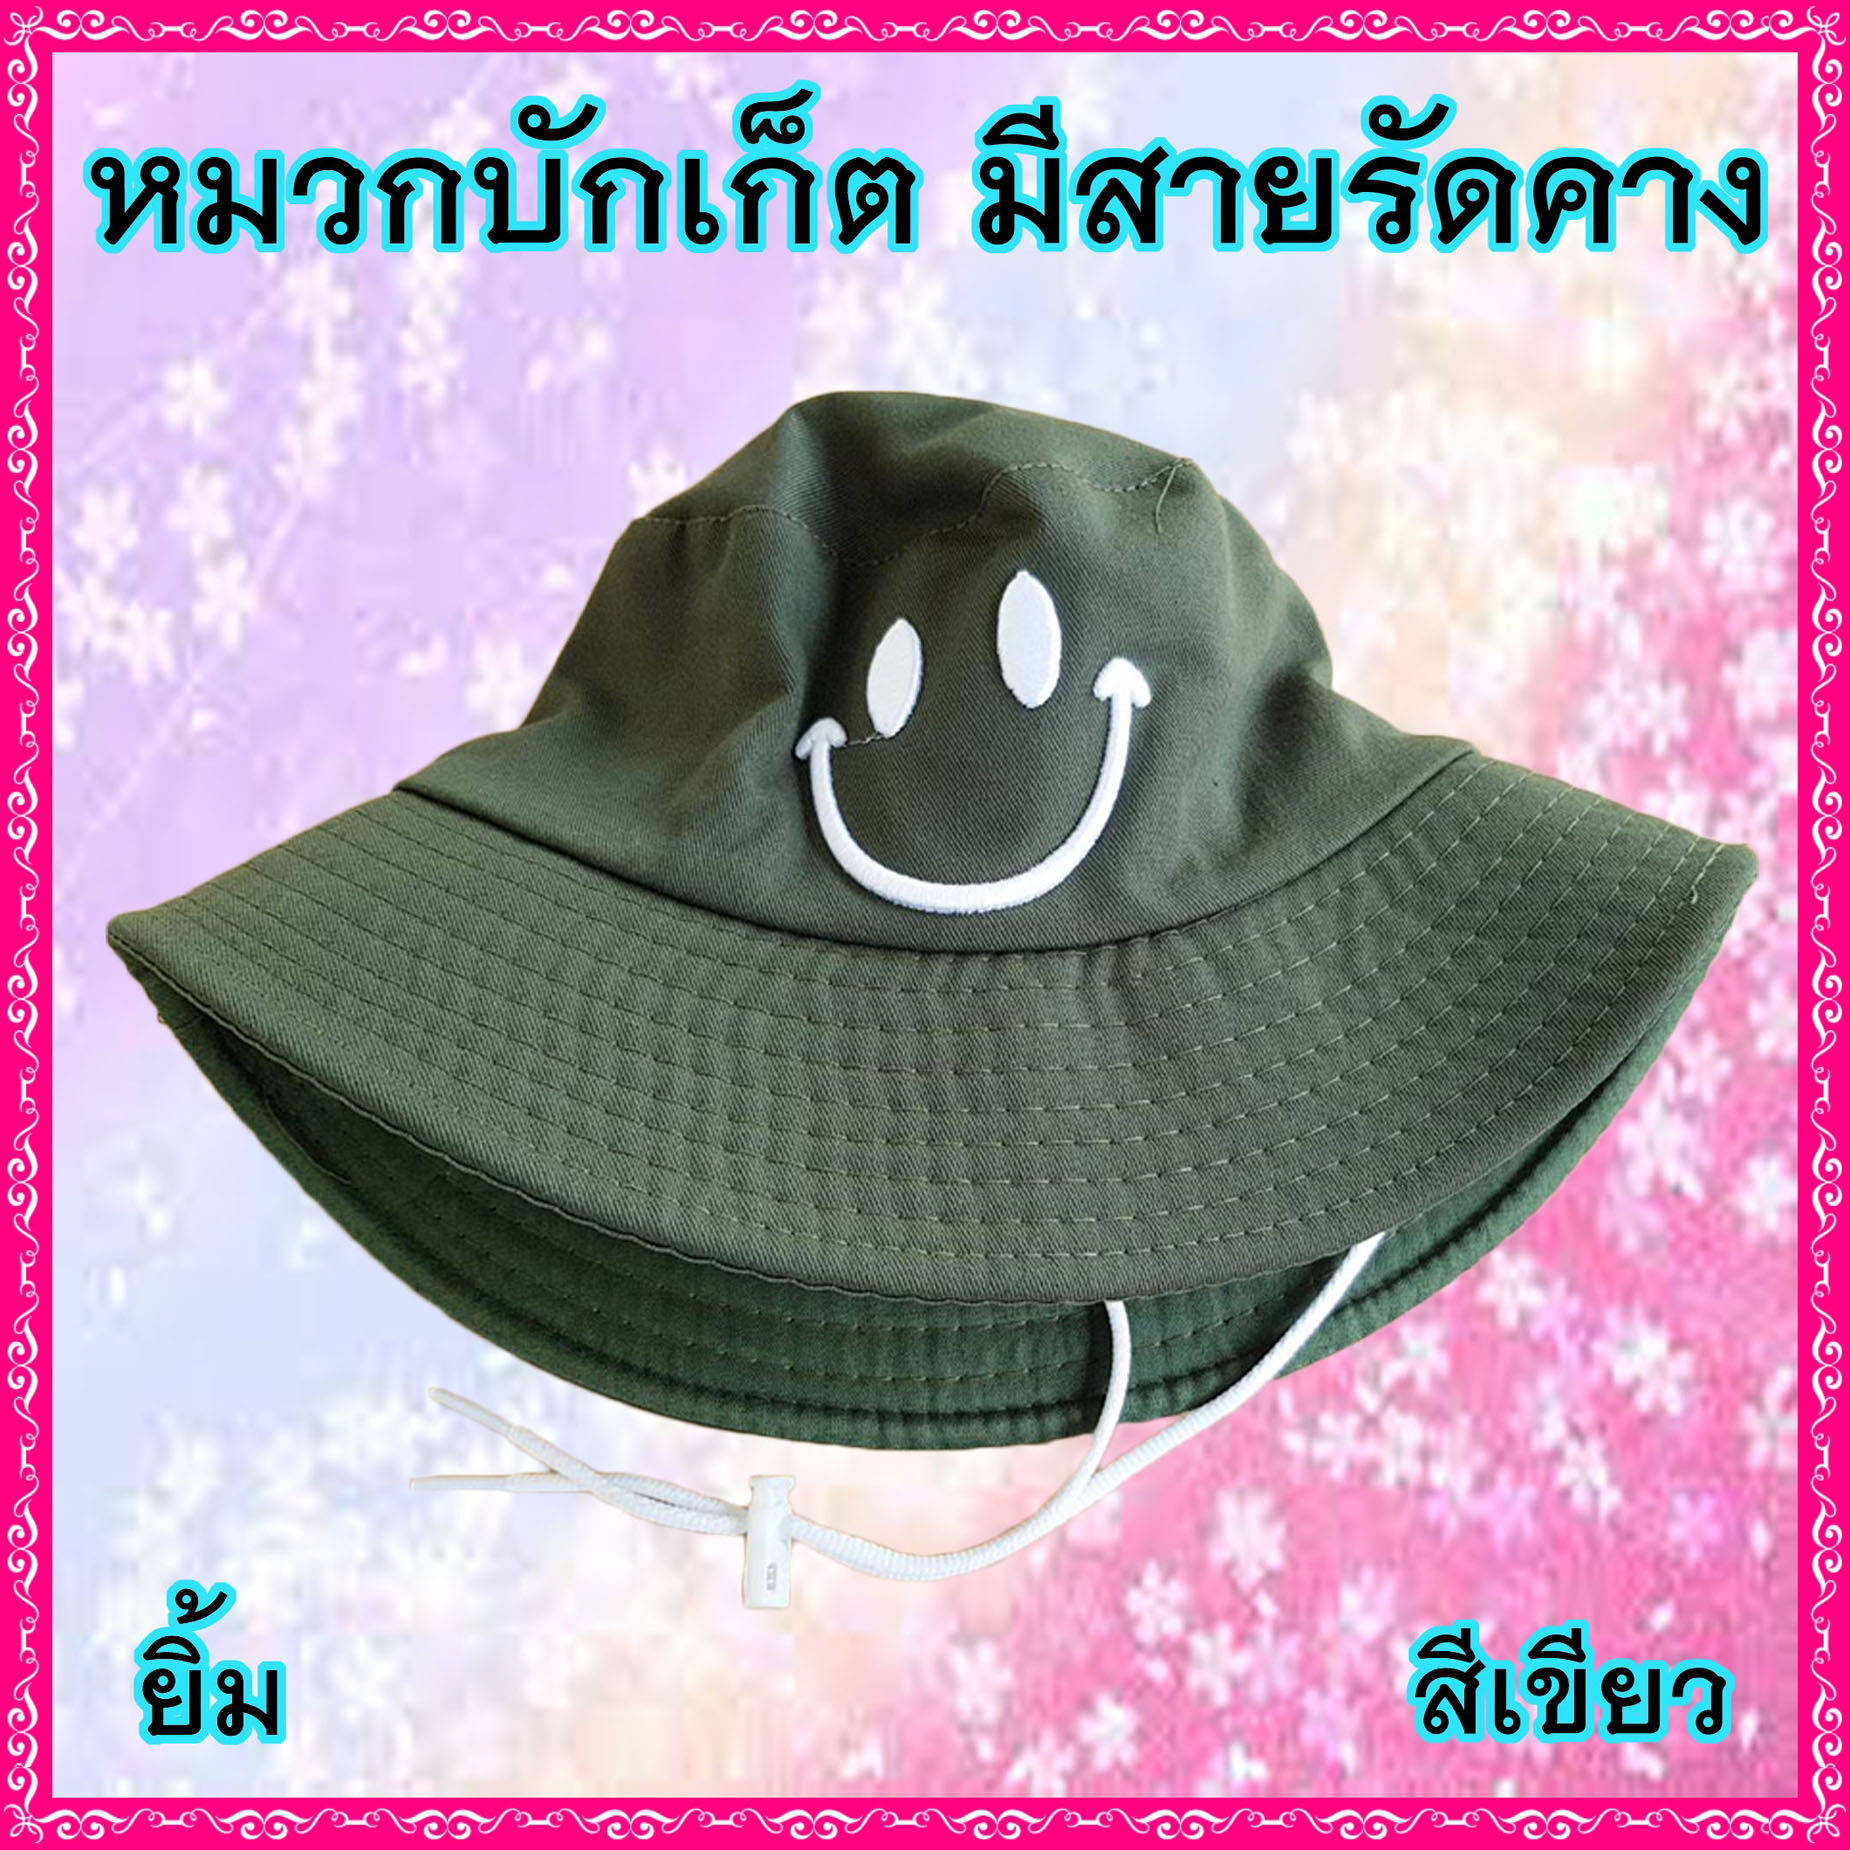 AM0025 หมวกบักเก็ต มีสายรัดคาง หมวกแฟชั่น หมวกปีกรอบ มีหลายลาย หลายสี ราคาถูก พร้อมส่ง!!!